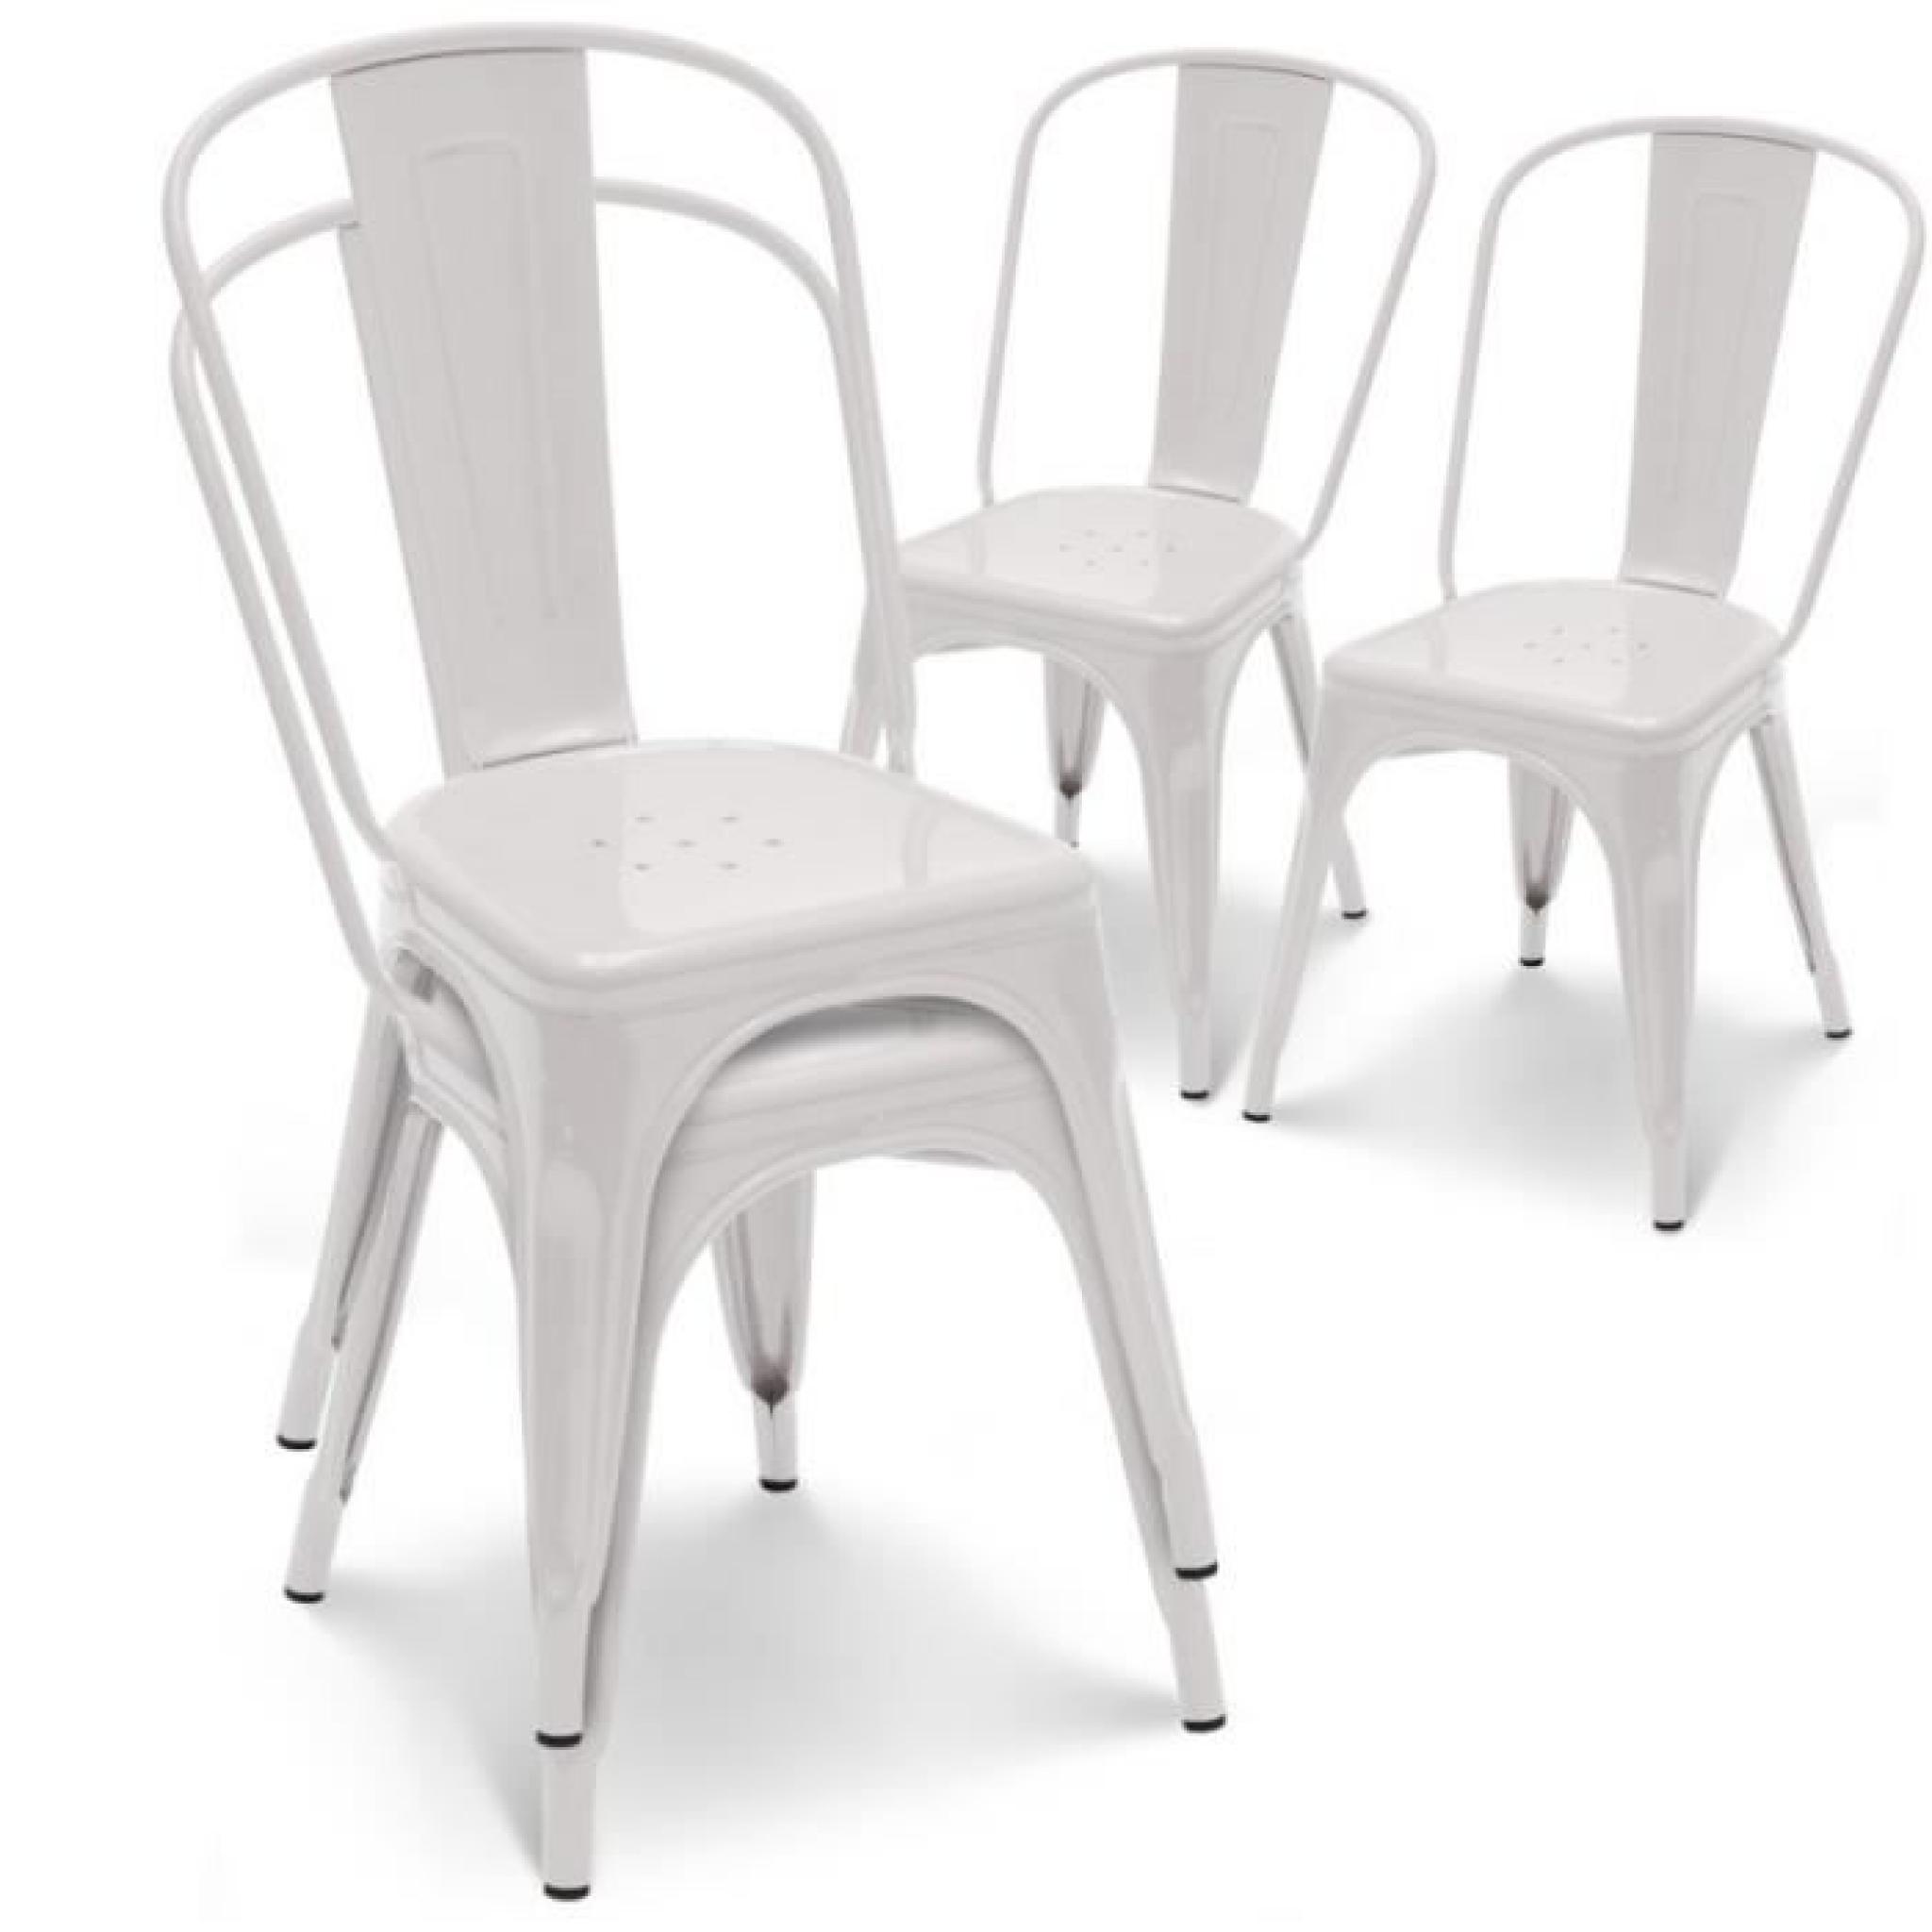 Chaise en métal blanc empilable lot de 4